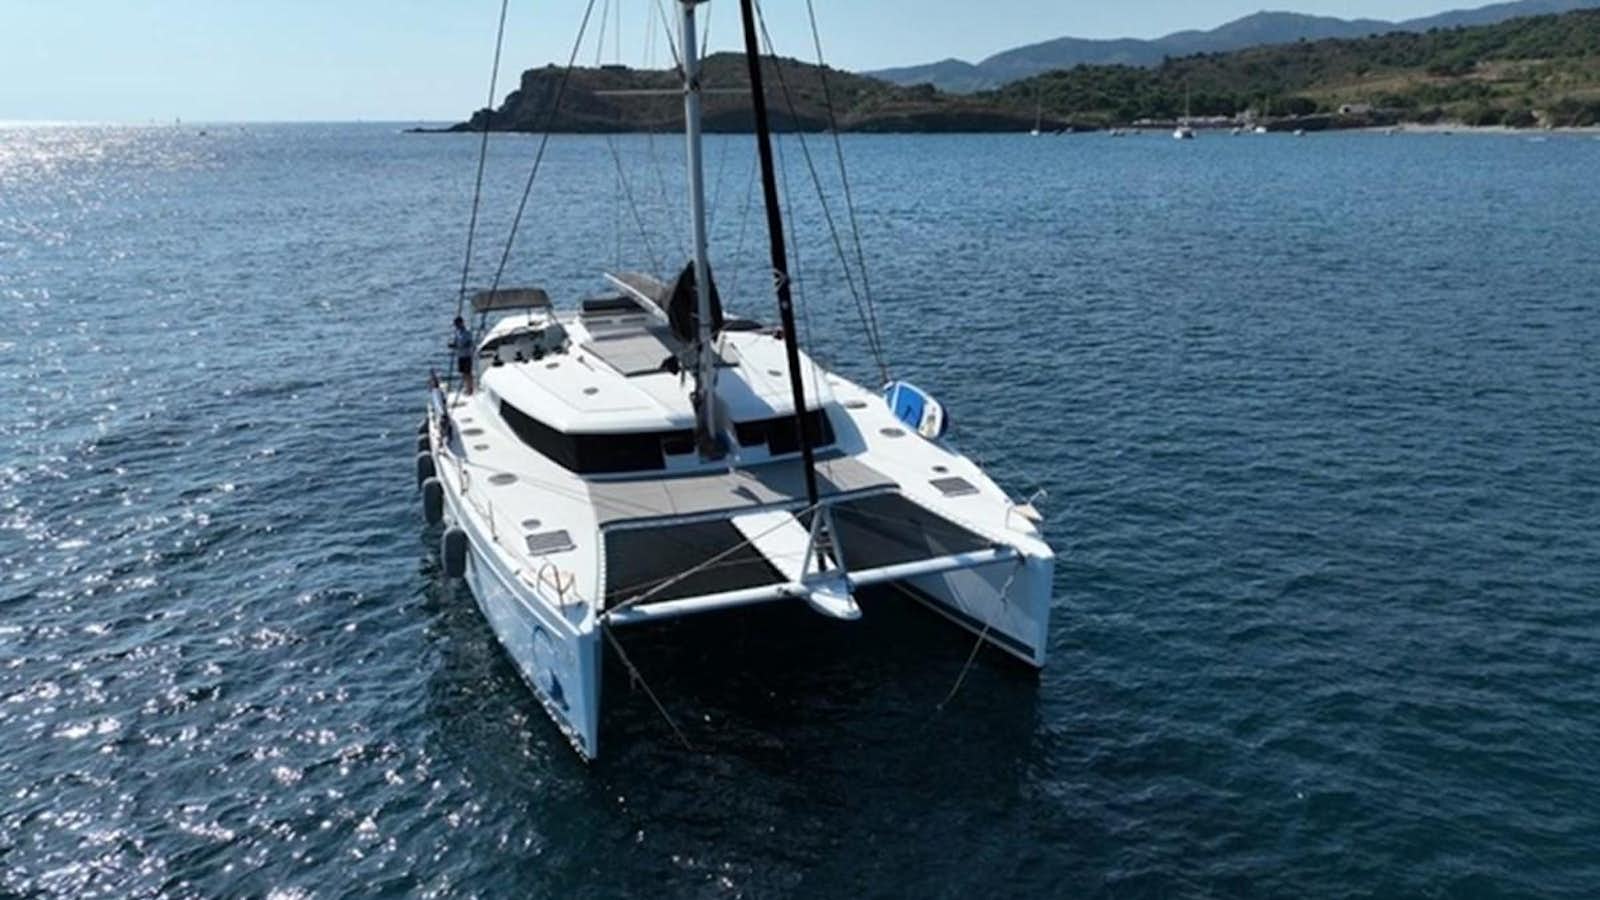 Sanya 57
Yacht for Sale